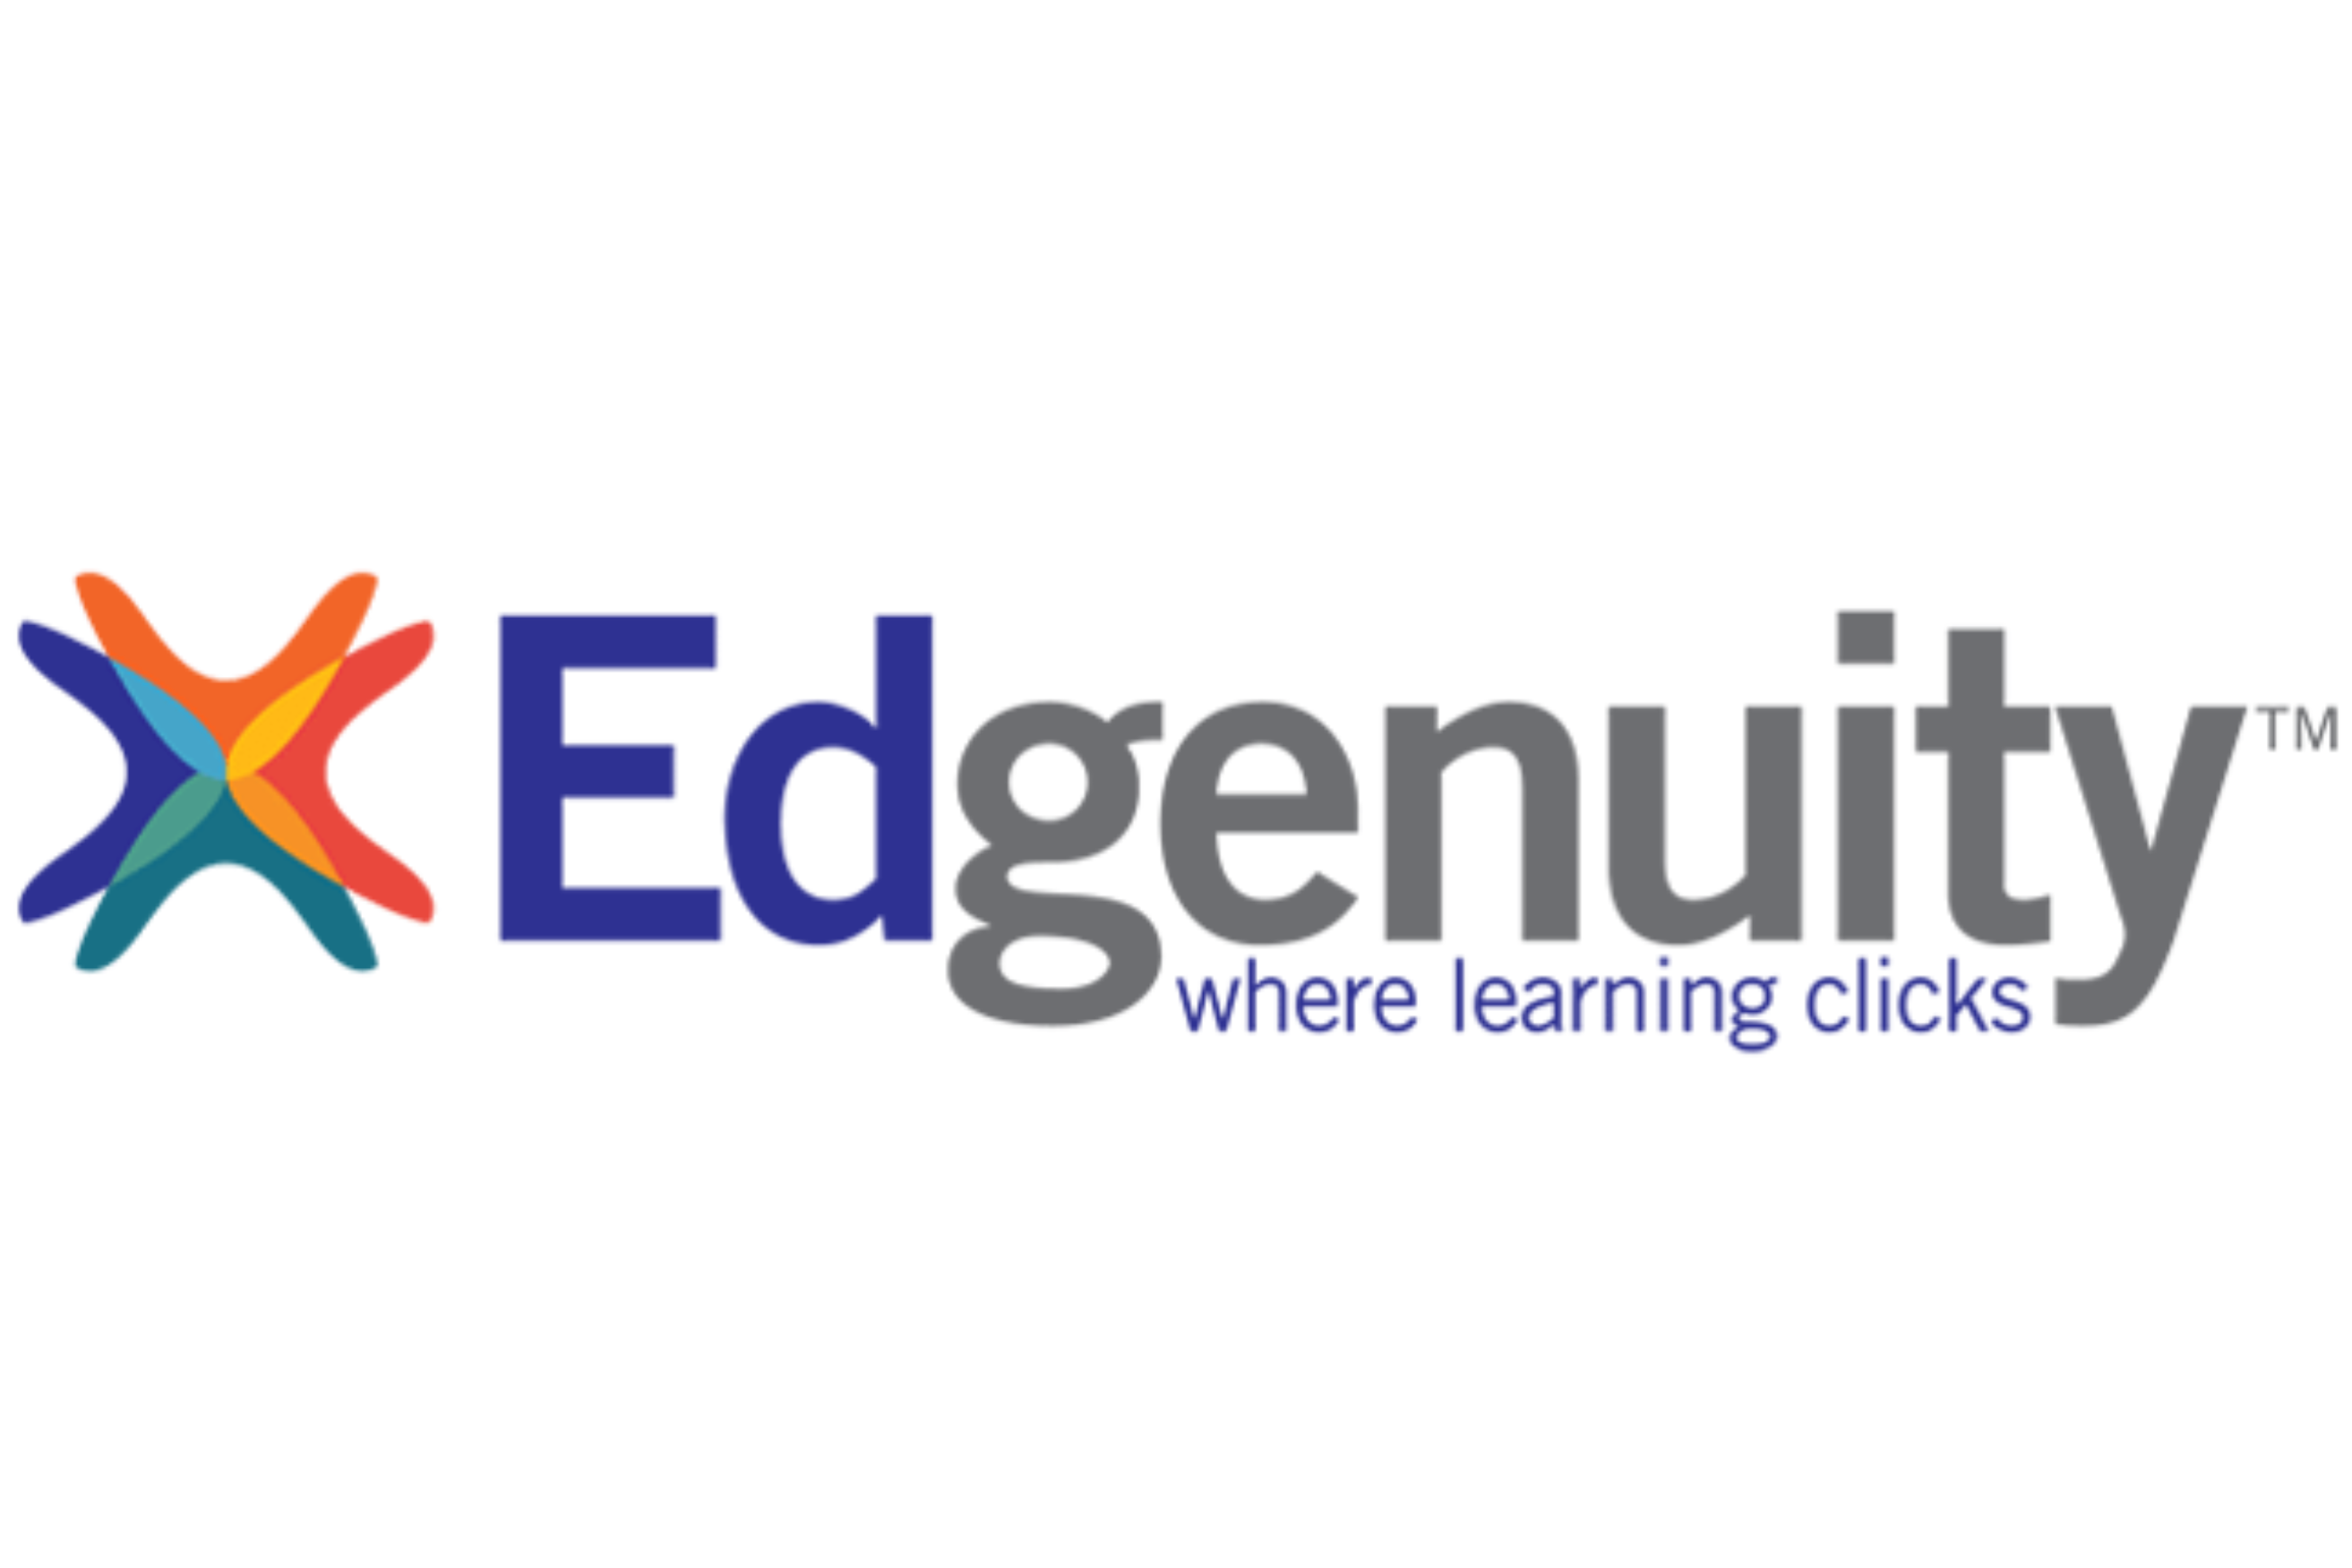 edgenuity logo on white background